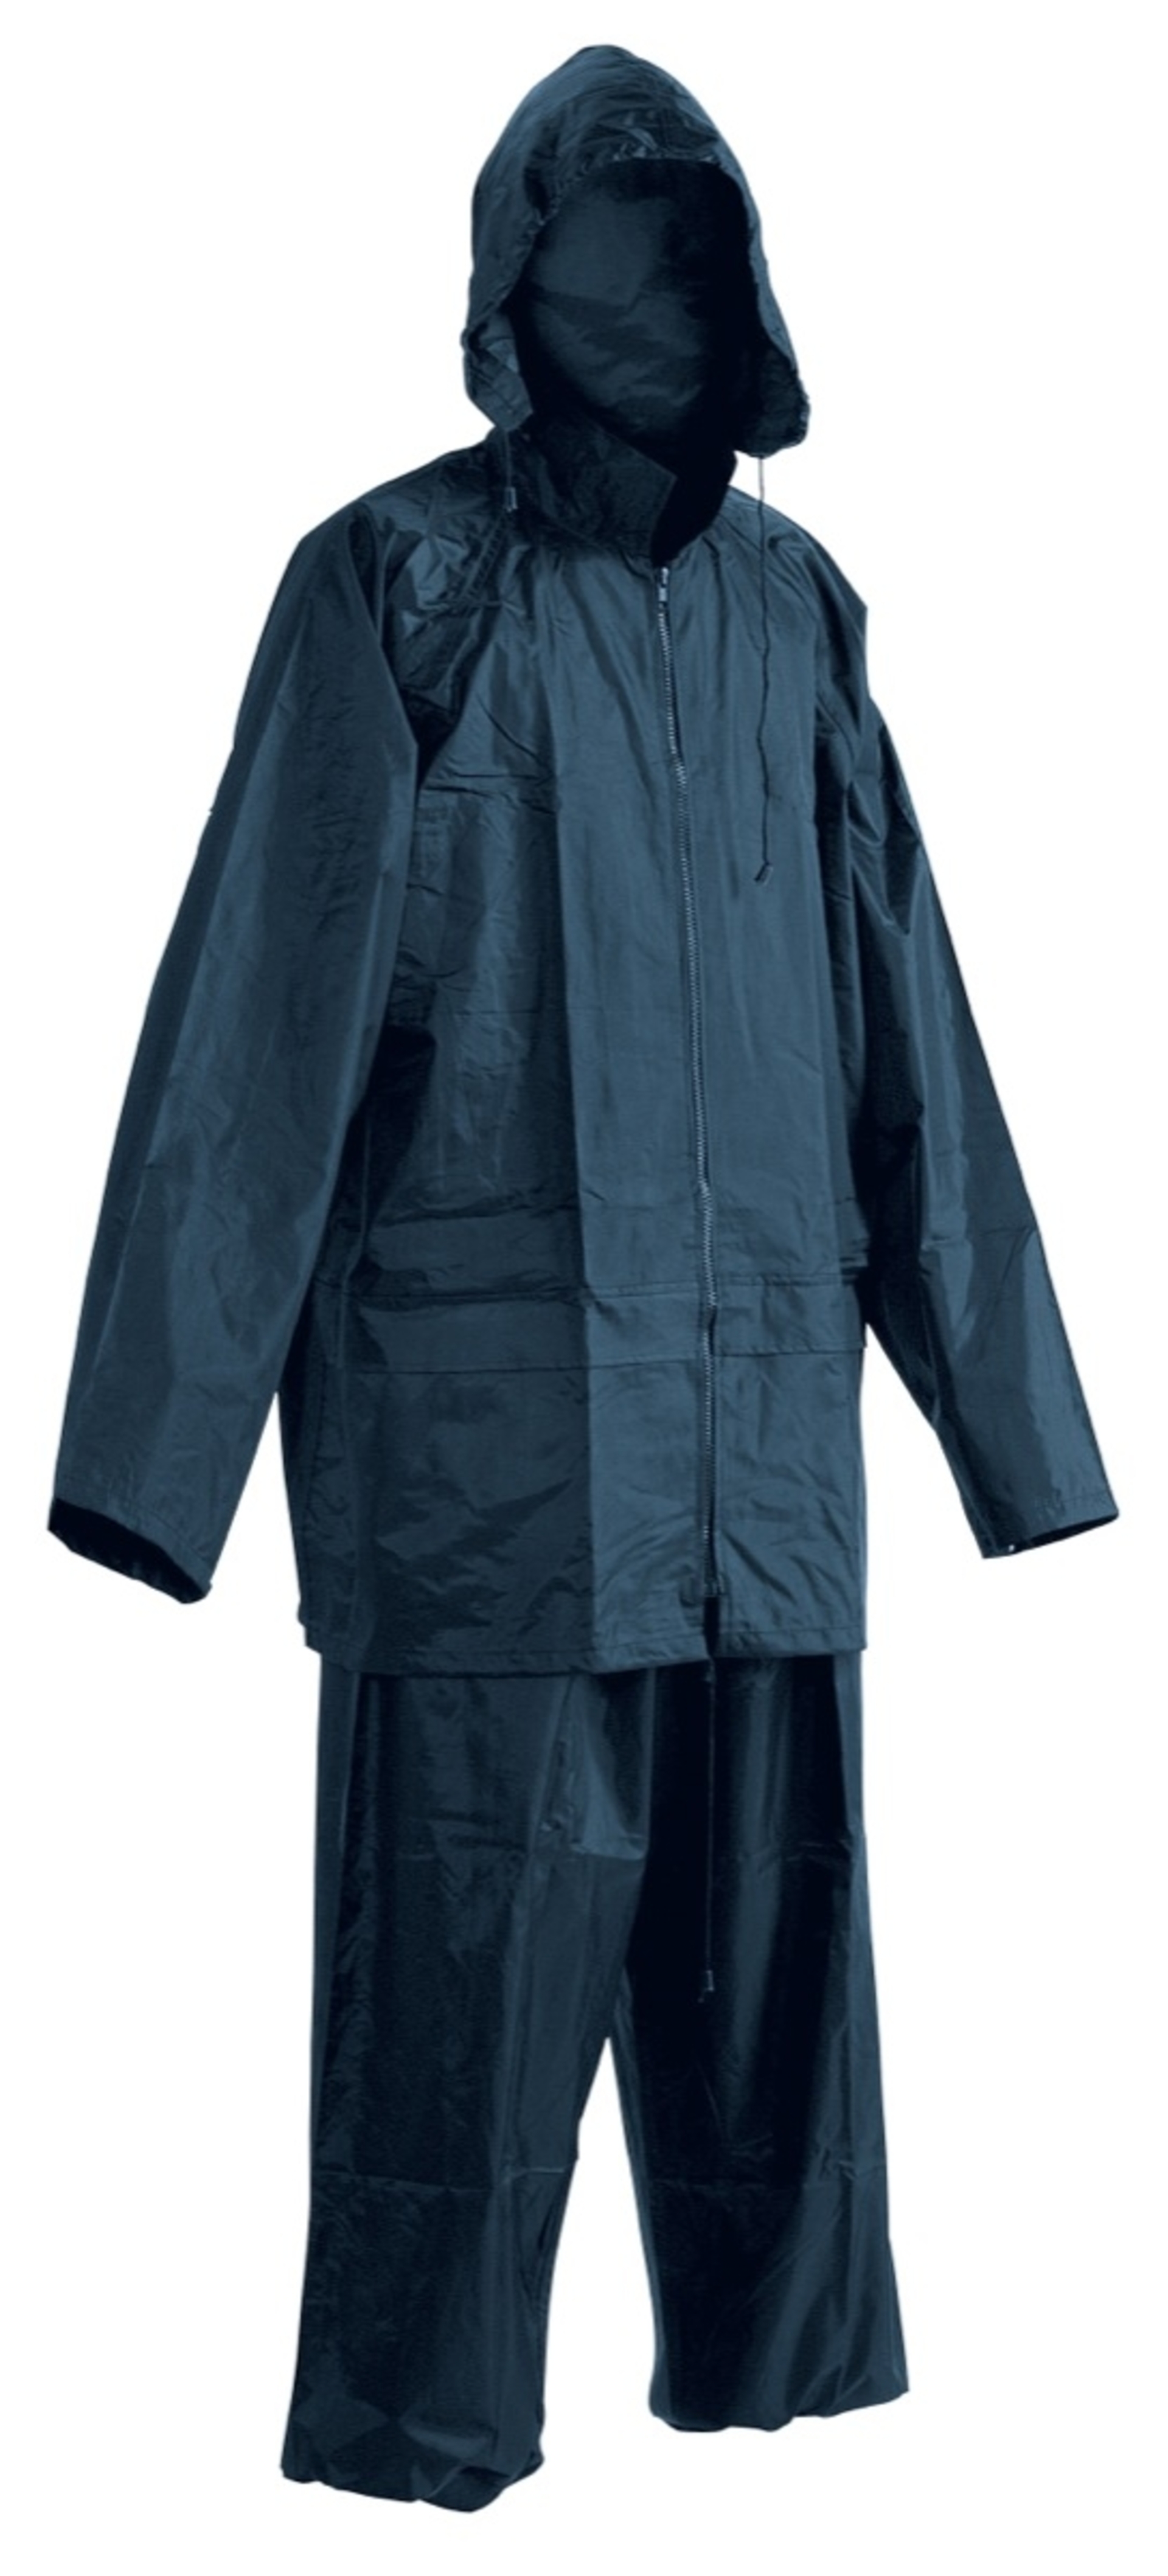 Cerva CARINA Oblek nepromokavý modrá 3XL + Bezplatné vrácení zboží